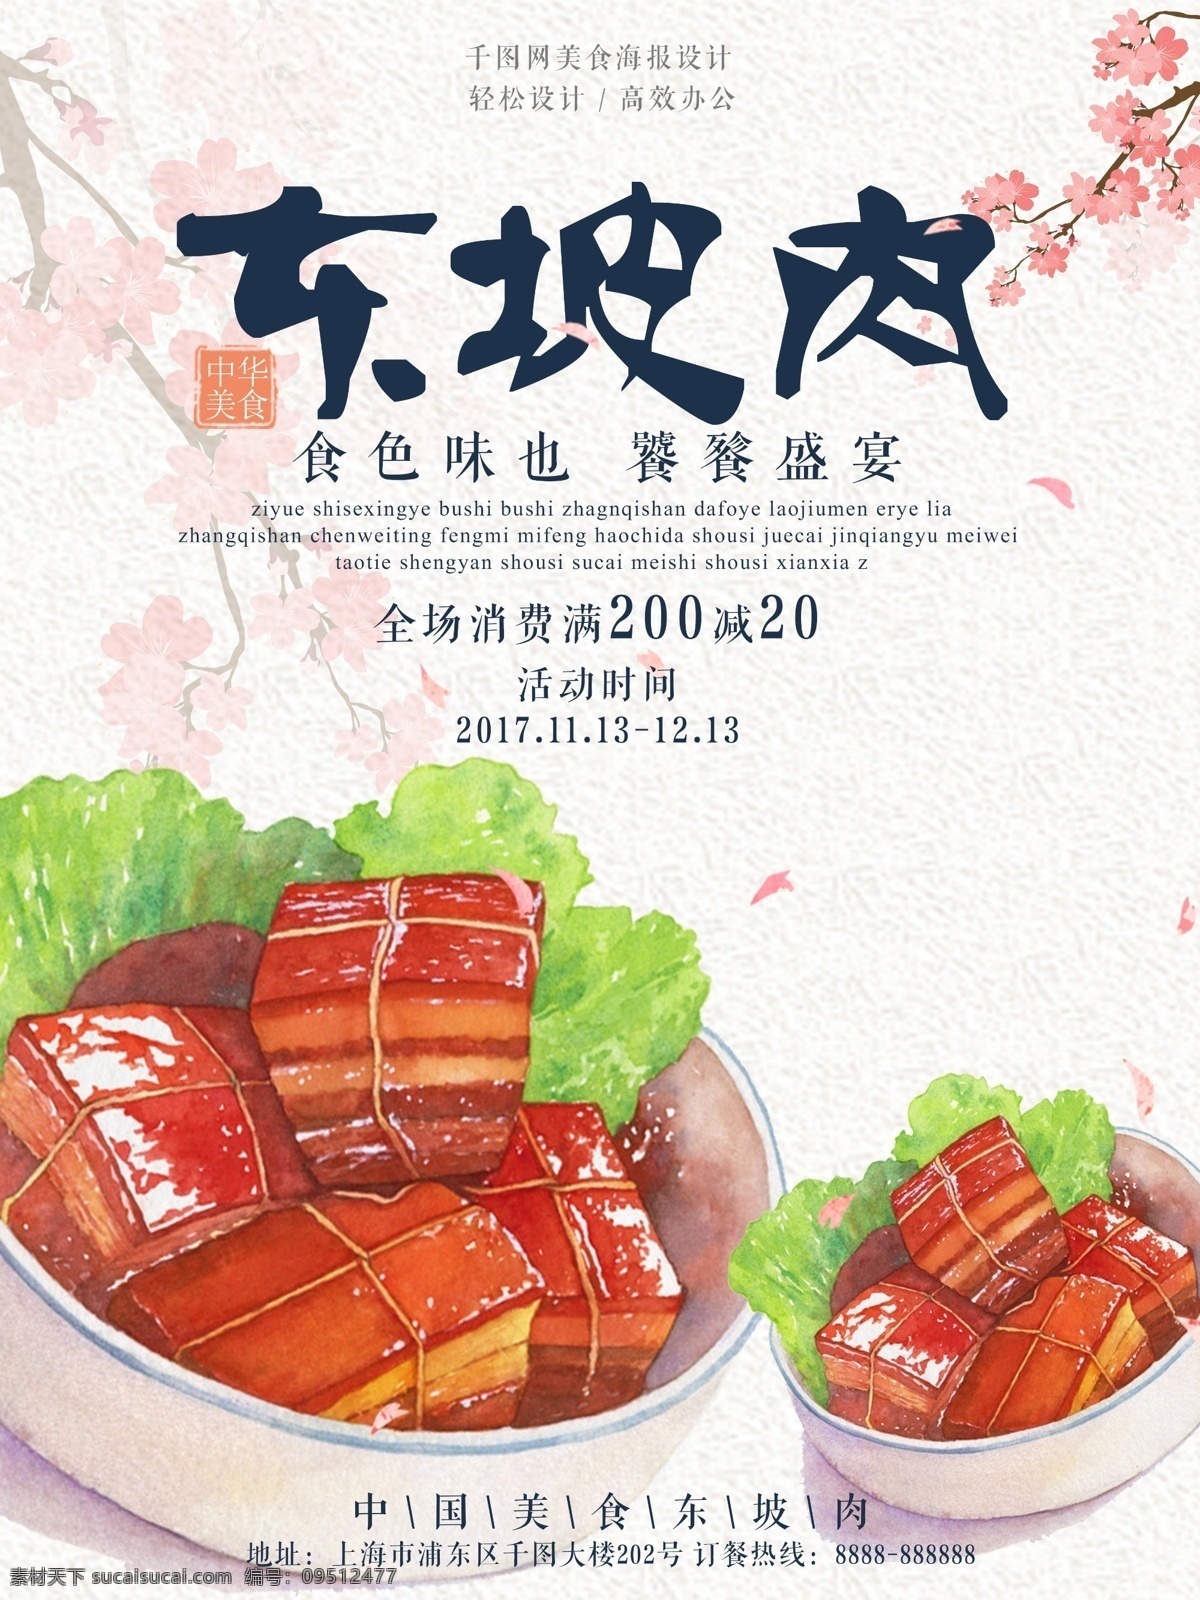 手绘 东坡肉 美食 海报 美食海报 美食促销海报 促销海报 东坡肉海报 中国 风 清新